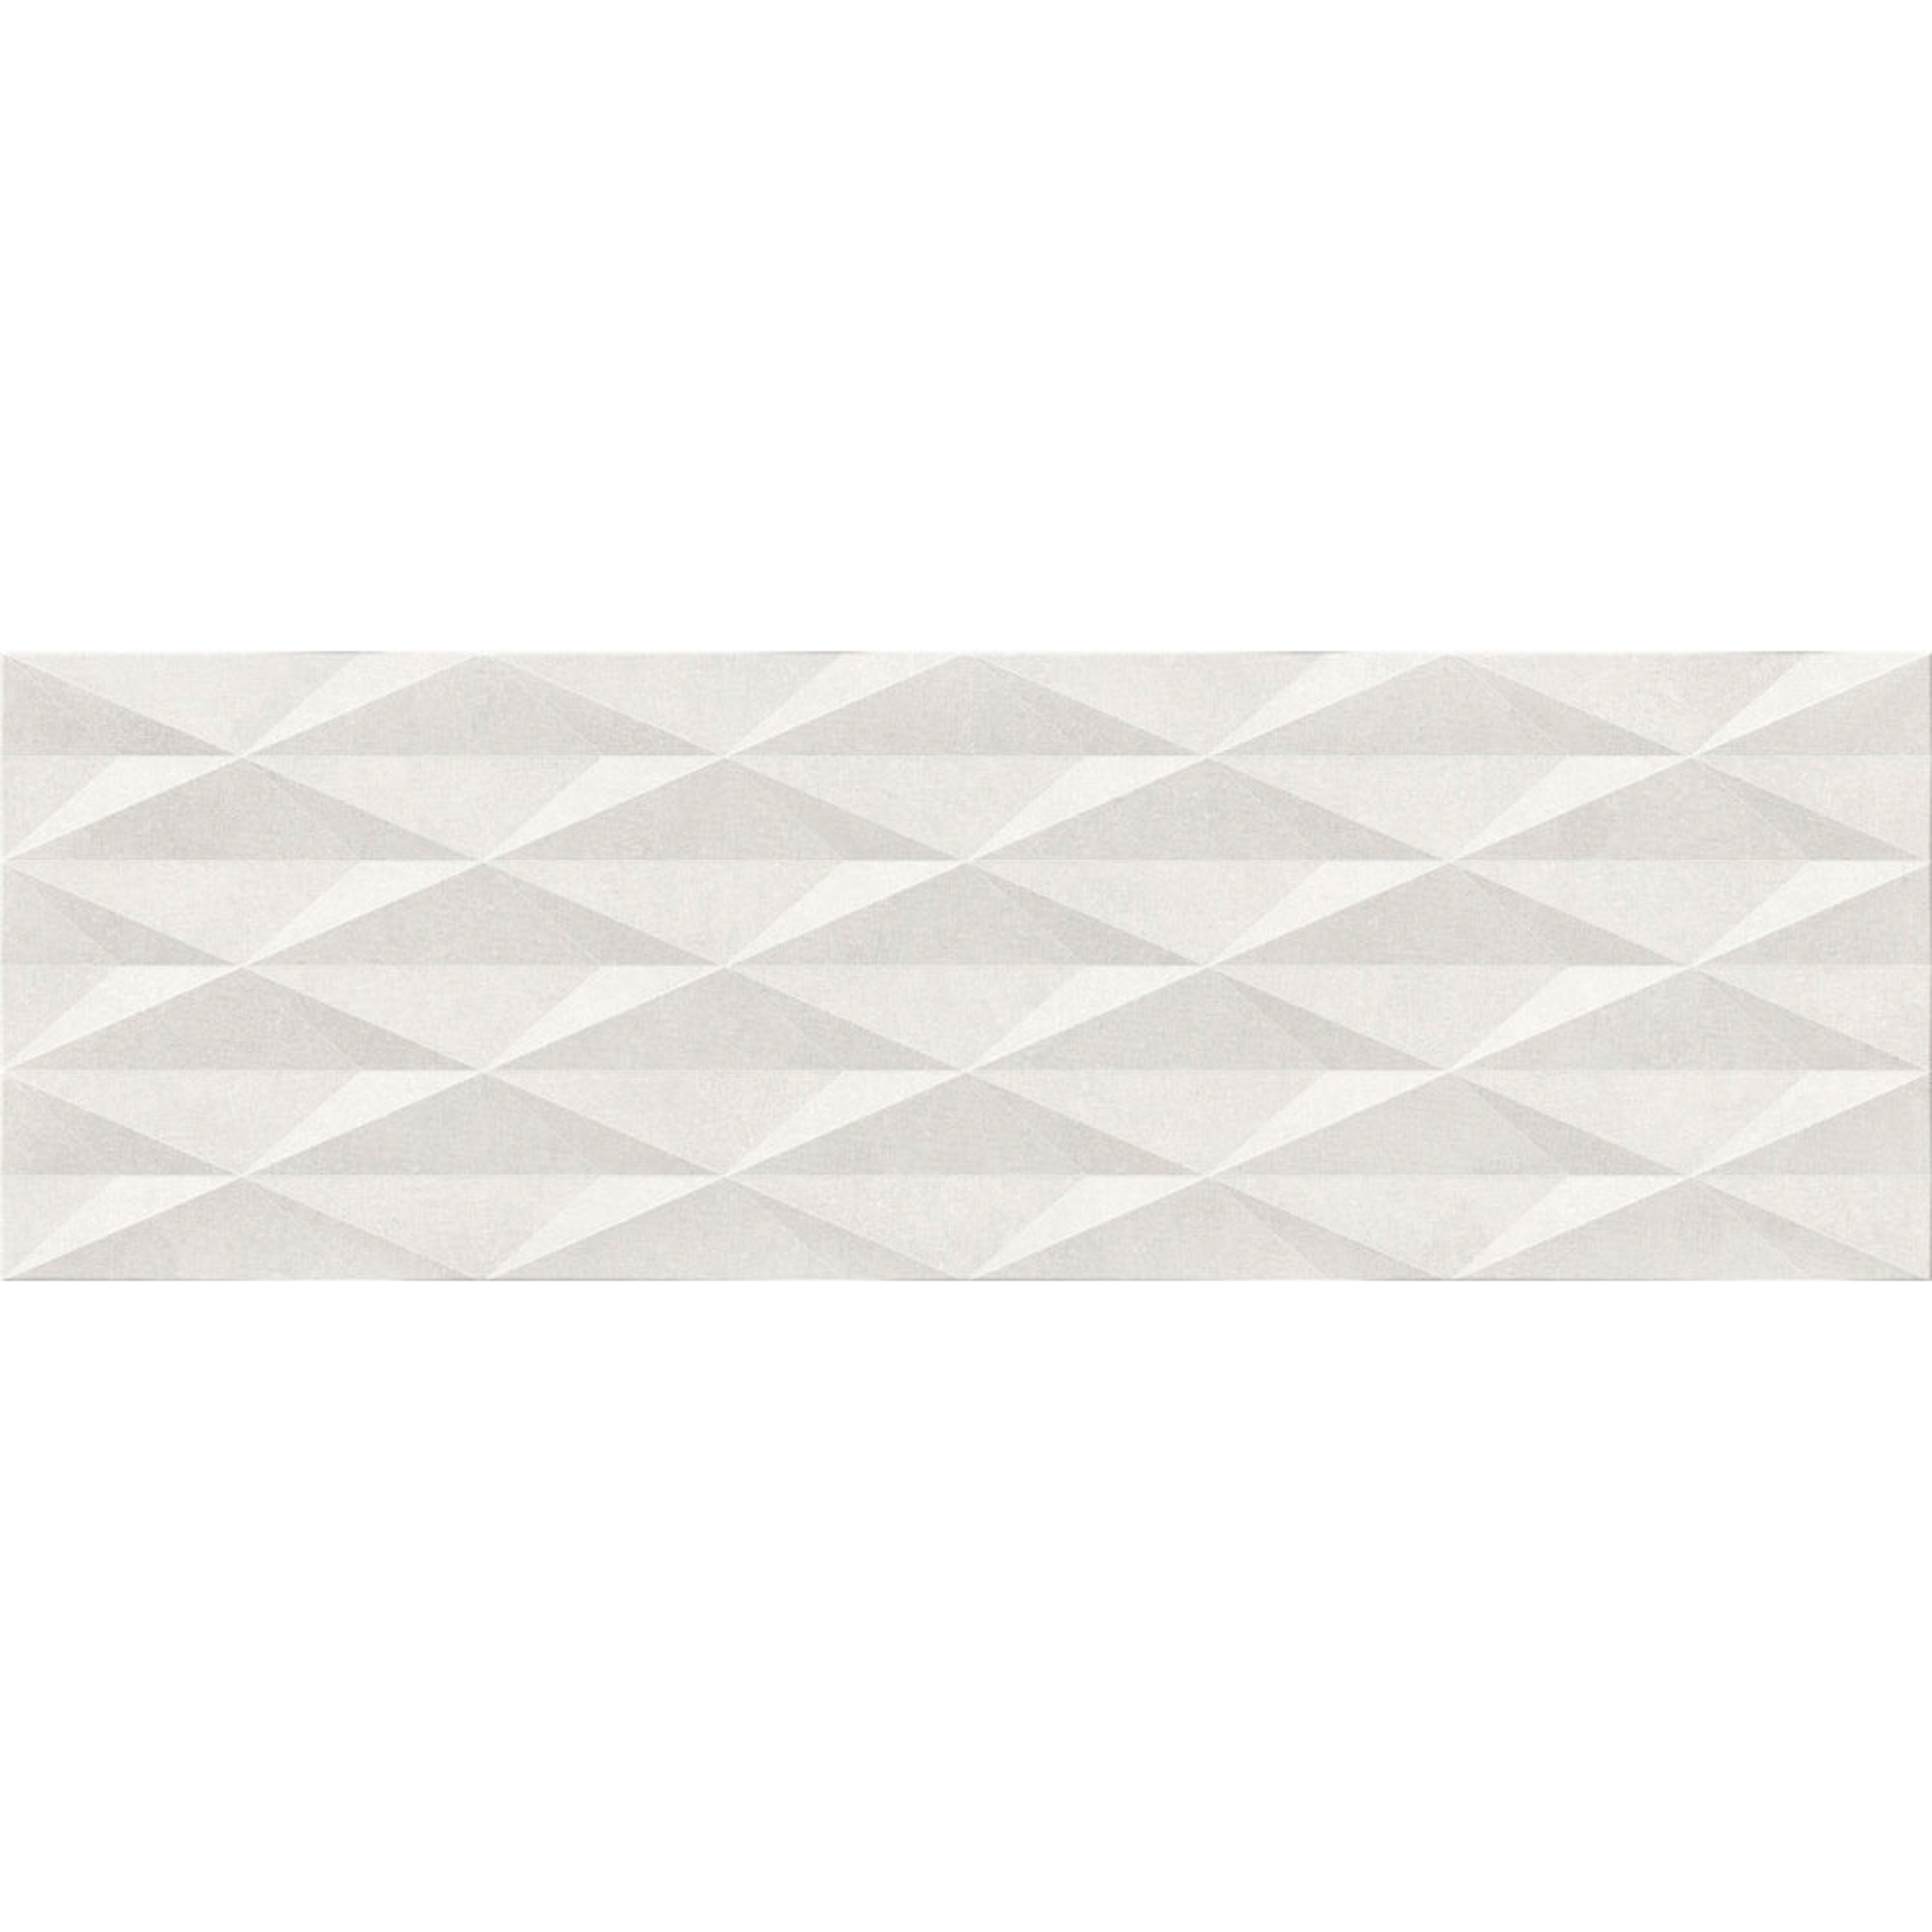 Плитка Emigres Dover Urbe Blanco 25x75 см плитка hispania ceramica pastelato blanco 20x60 см